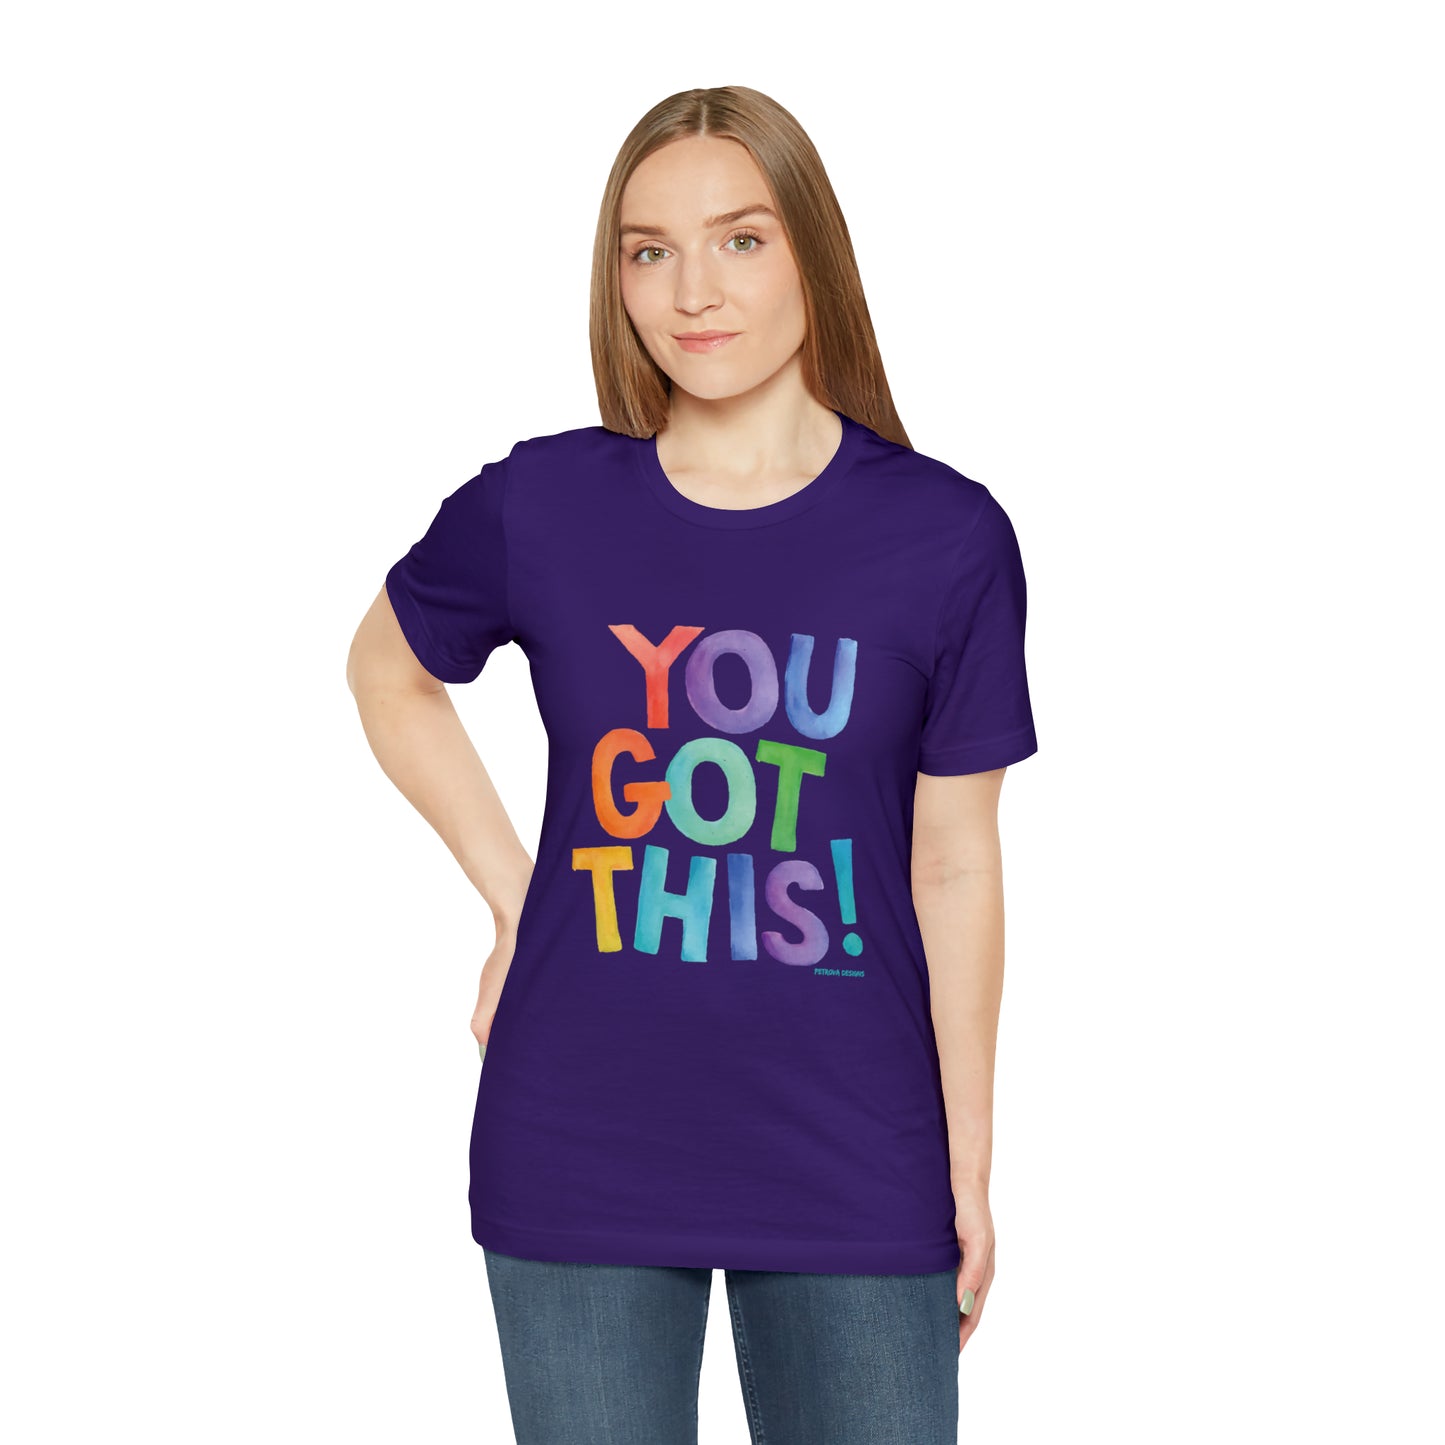 You Got This T-Shirt | Motivational T-Shirt Team Purple T-Shirt Petrova Designs